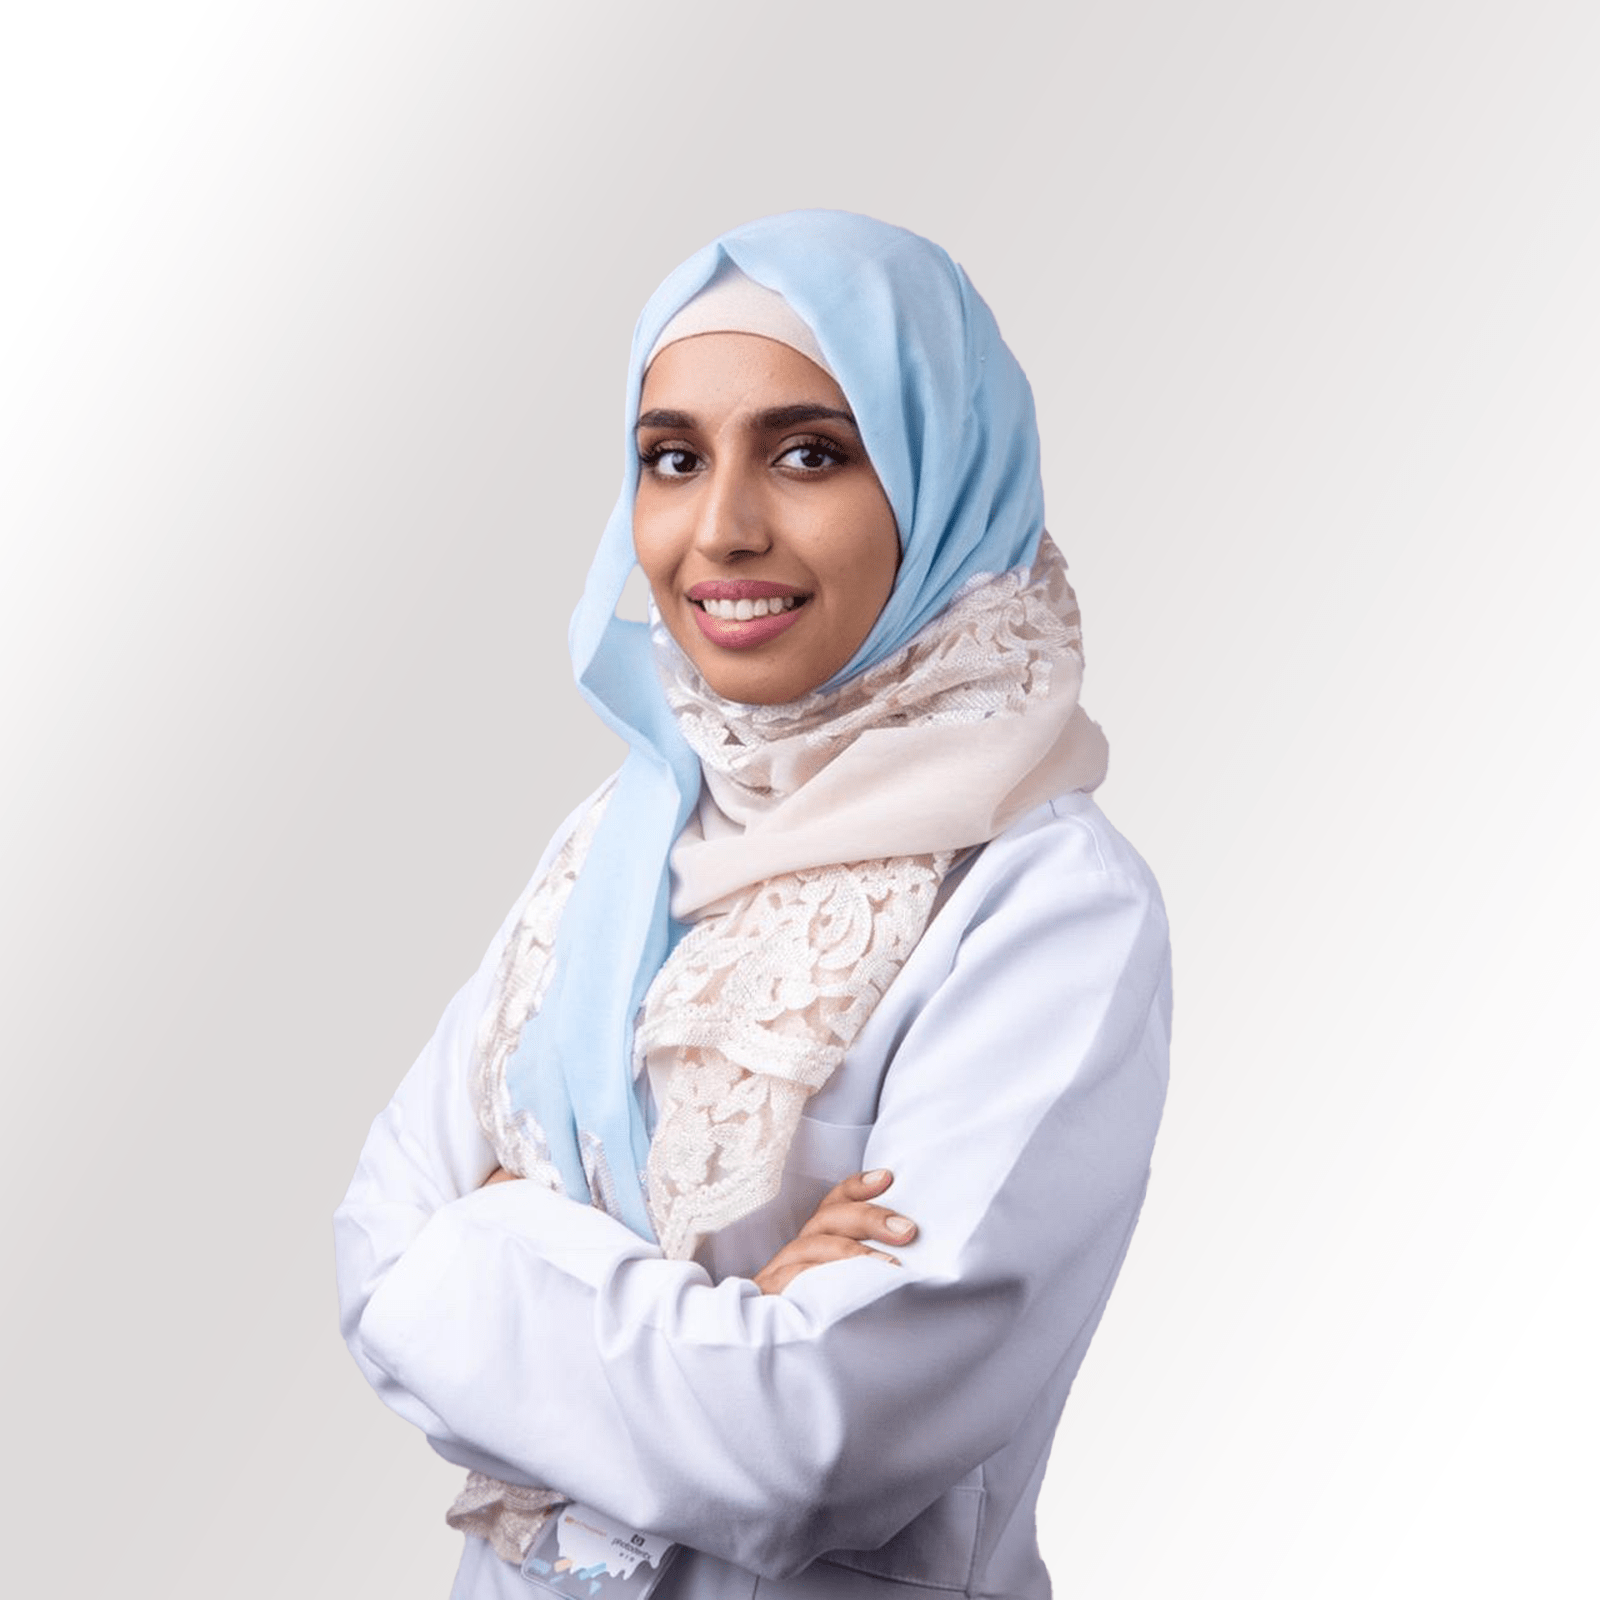 د. شهد بابطين | طبيب أسنان عام